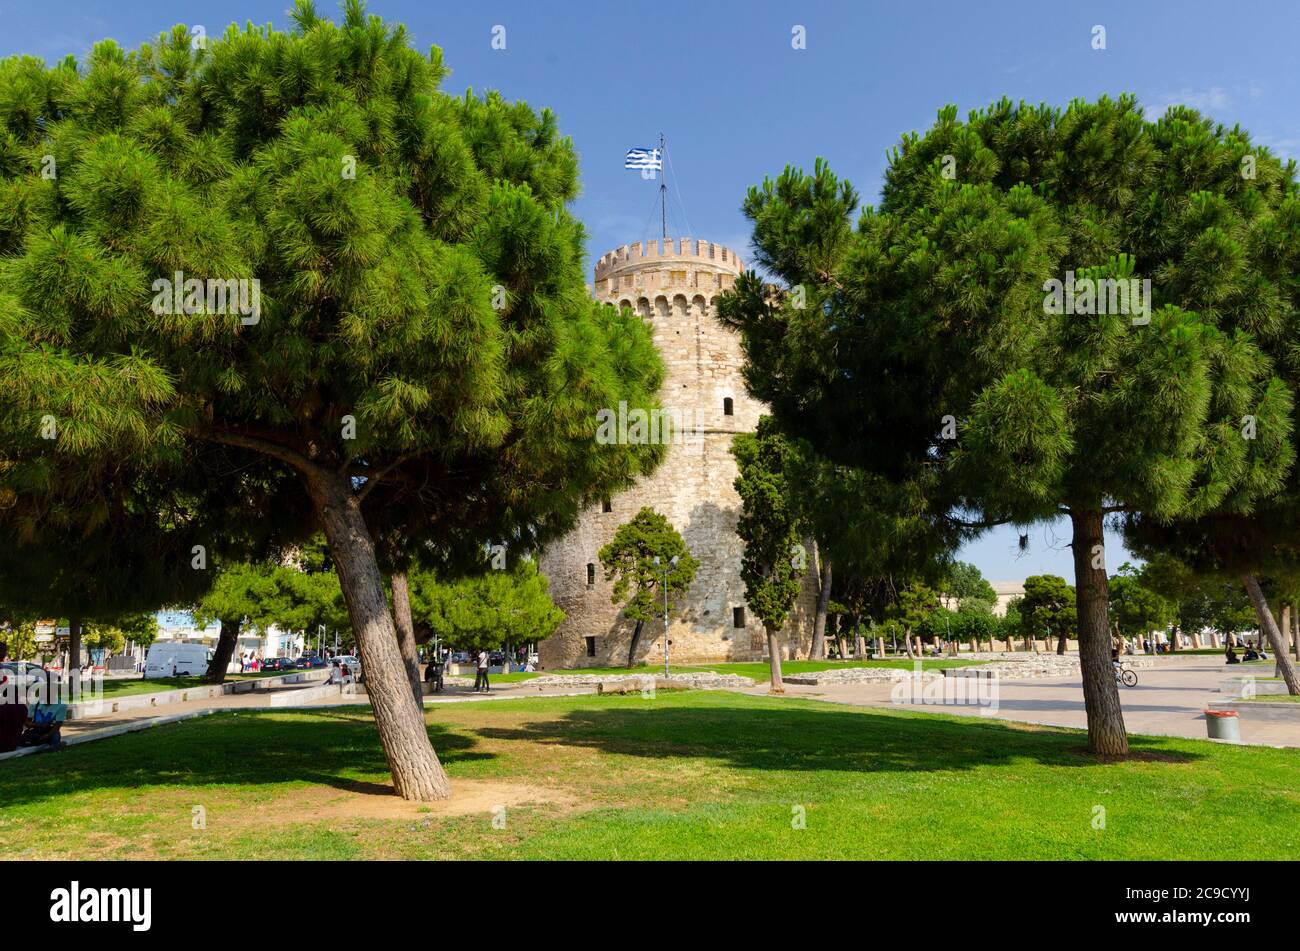 Gesamtansicht des berühmten Weißen Turms von Thessaloniki Mazedonien Griechenland. Dieses Wahrzeichen war früher eine osmanische Festung und ein Gefängnis Stockfoto